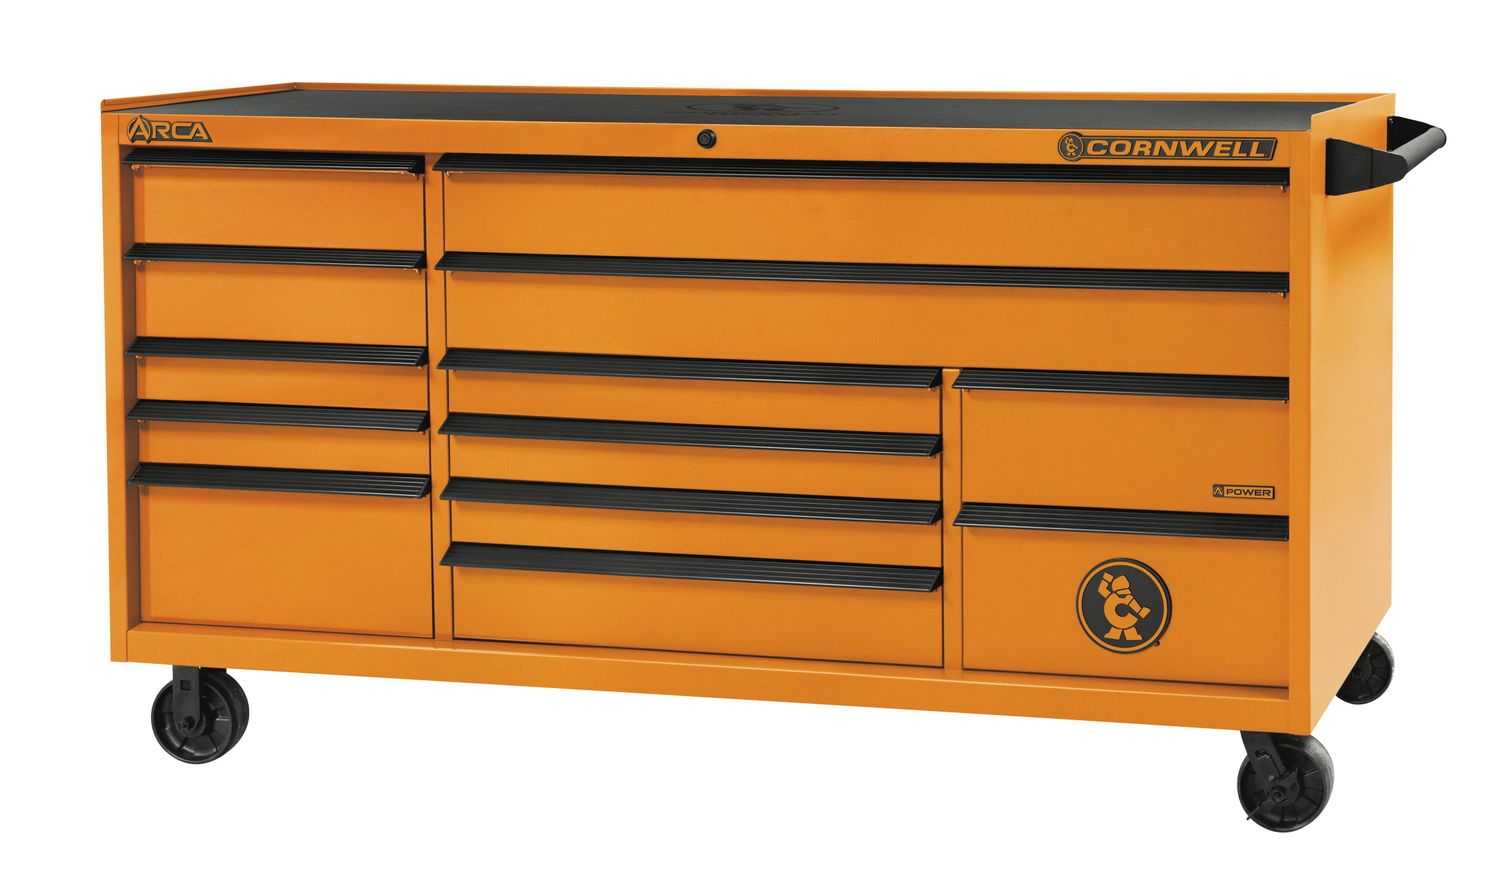 CTSASR7913KRE - ARCA® 79” 13-Drawer Triple Bank Roller Cabinet, Ignition Orange